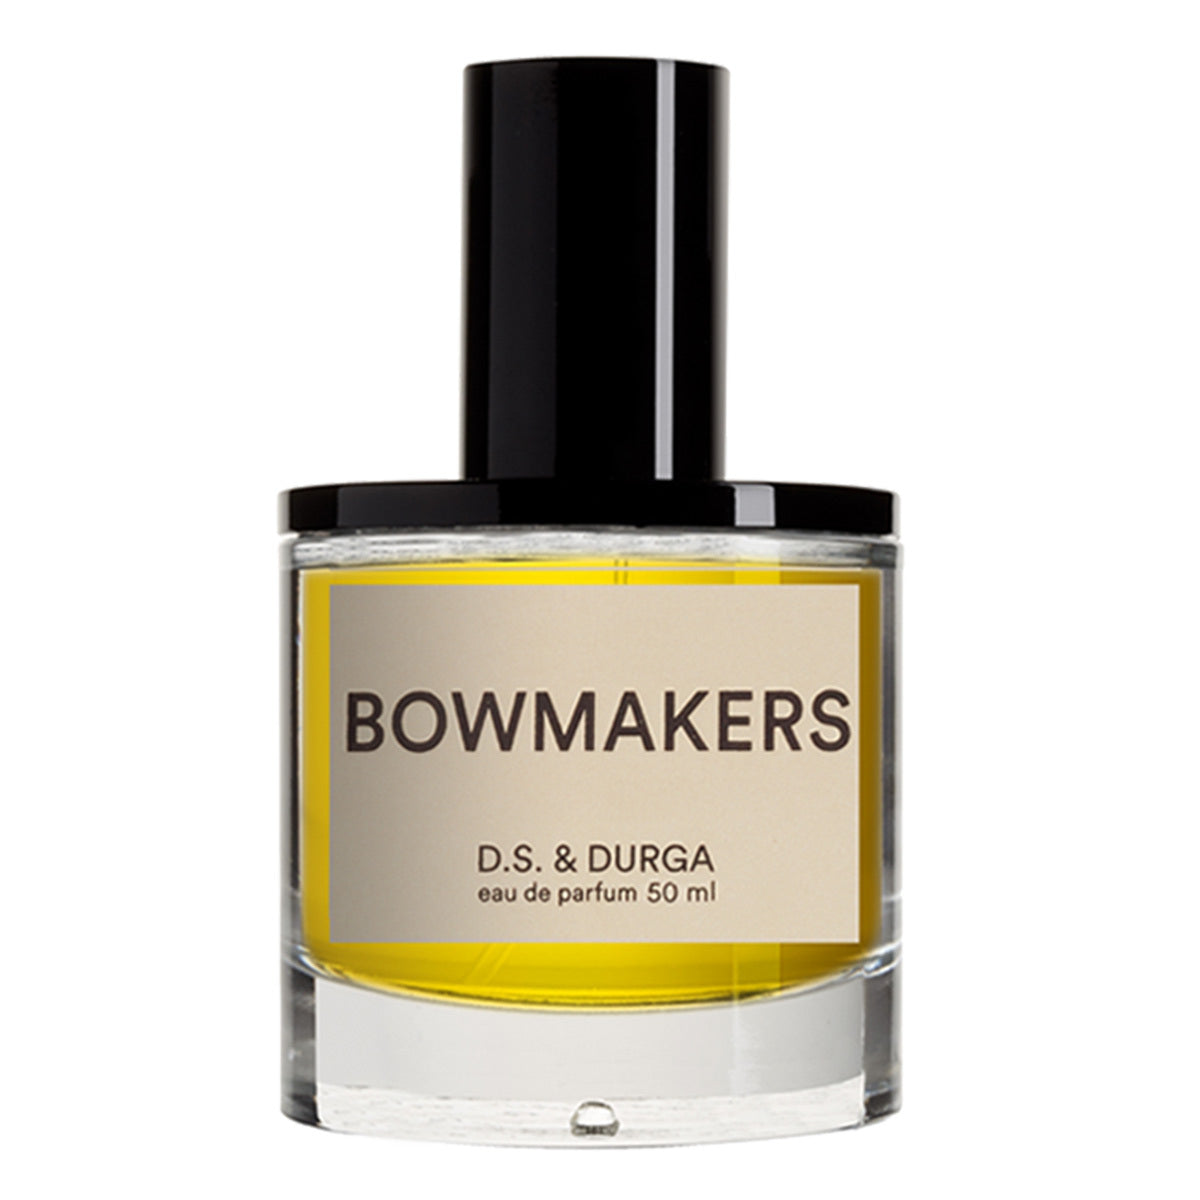 Primary image of Bowmakers Eau de Parfum